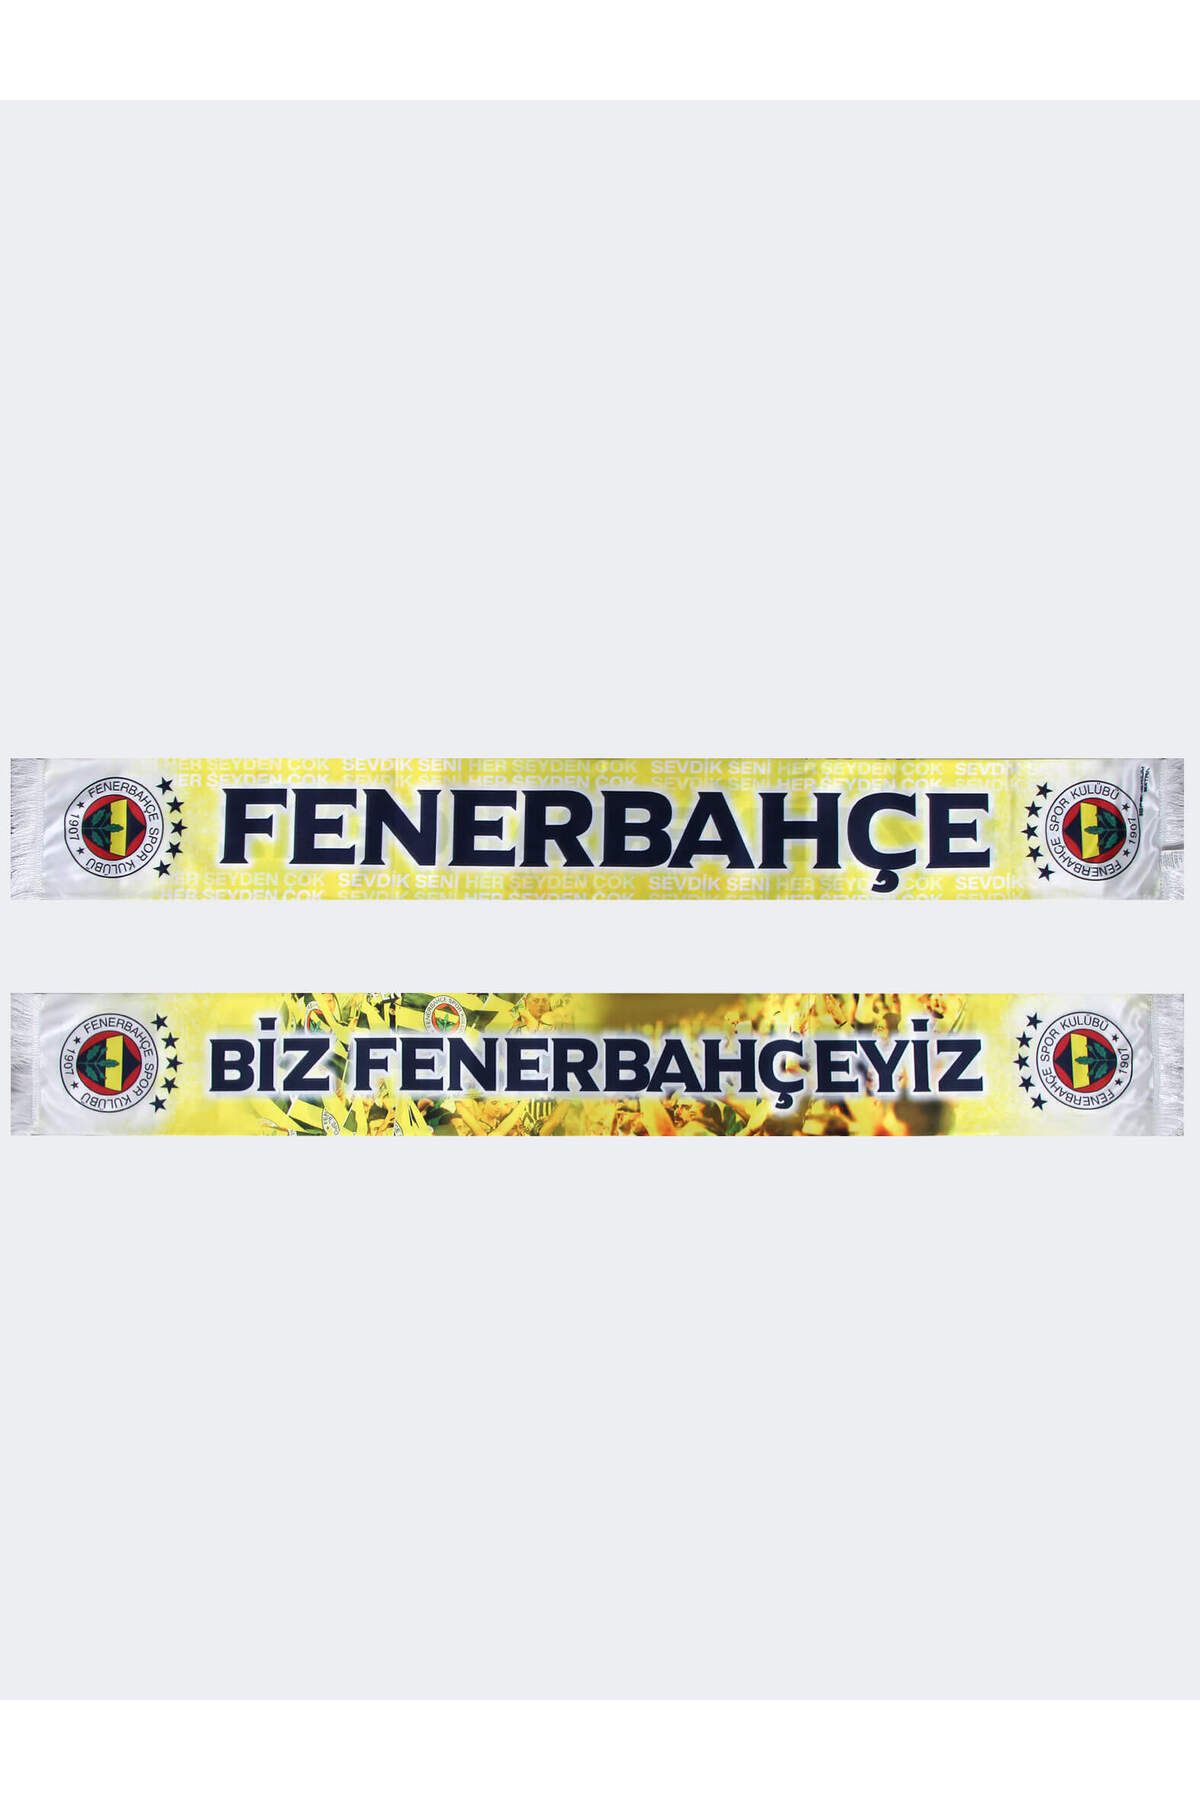 Fenerbahçe UNISEX 5 YILDIZ BİZ FENERBAHÇELİYİZ Ş